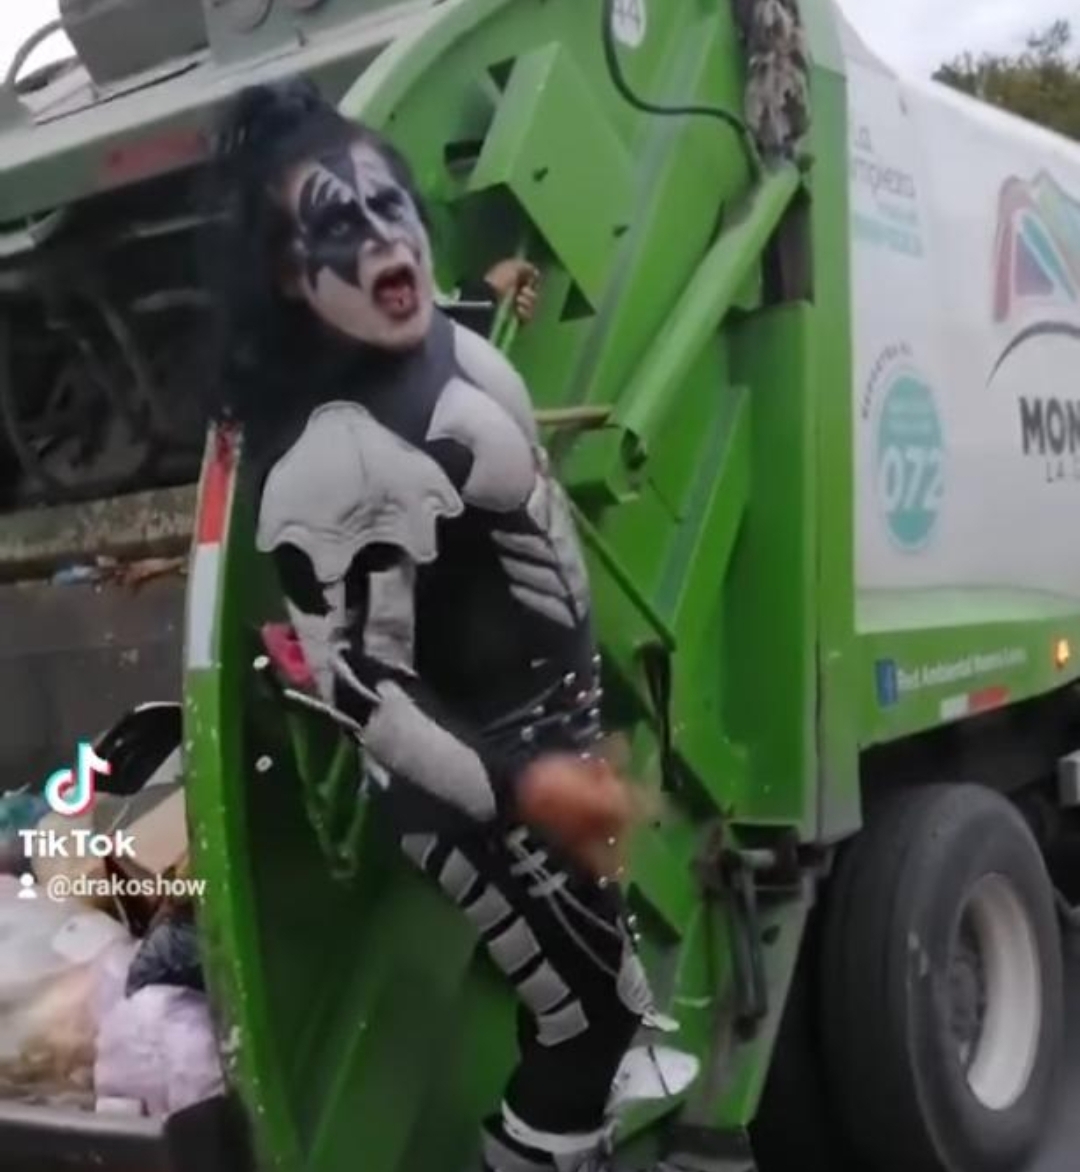 Recolector de basura en México se disfraza de miembro de Kiss, Gene Simmons lo elogia